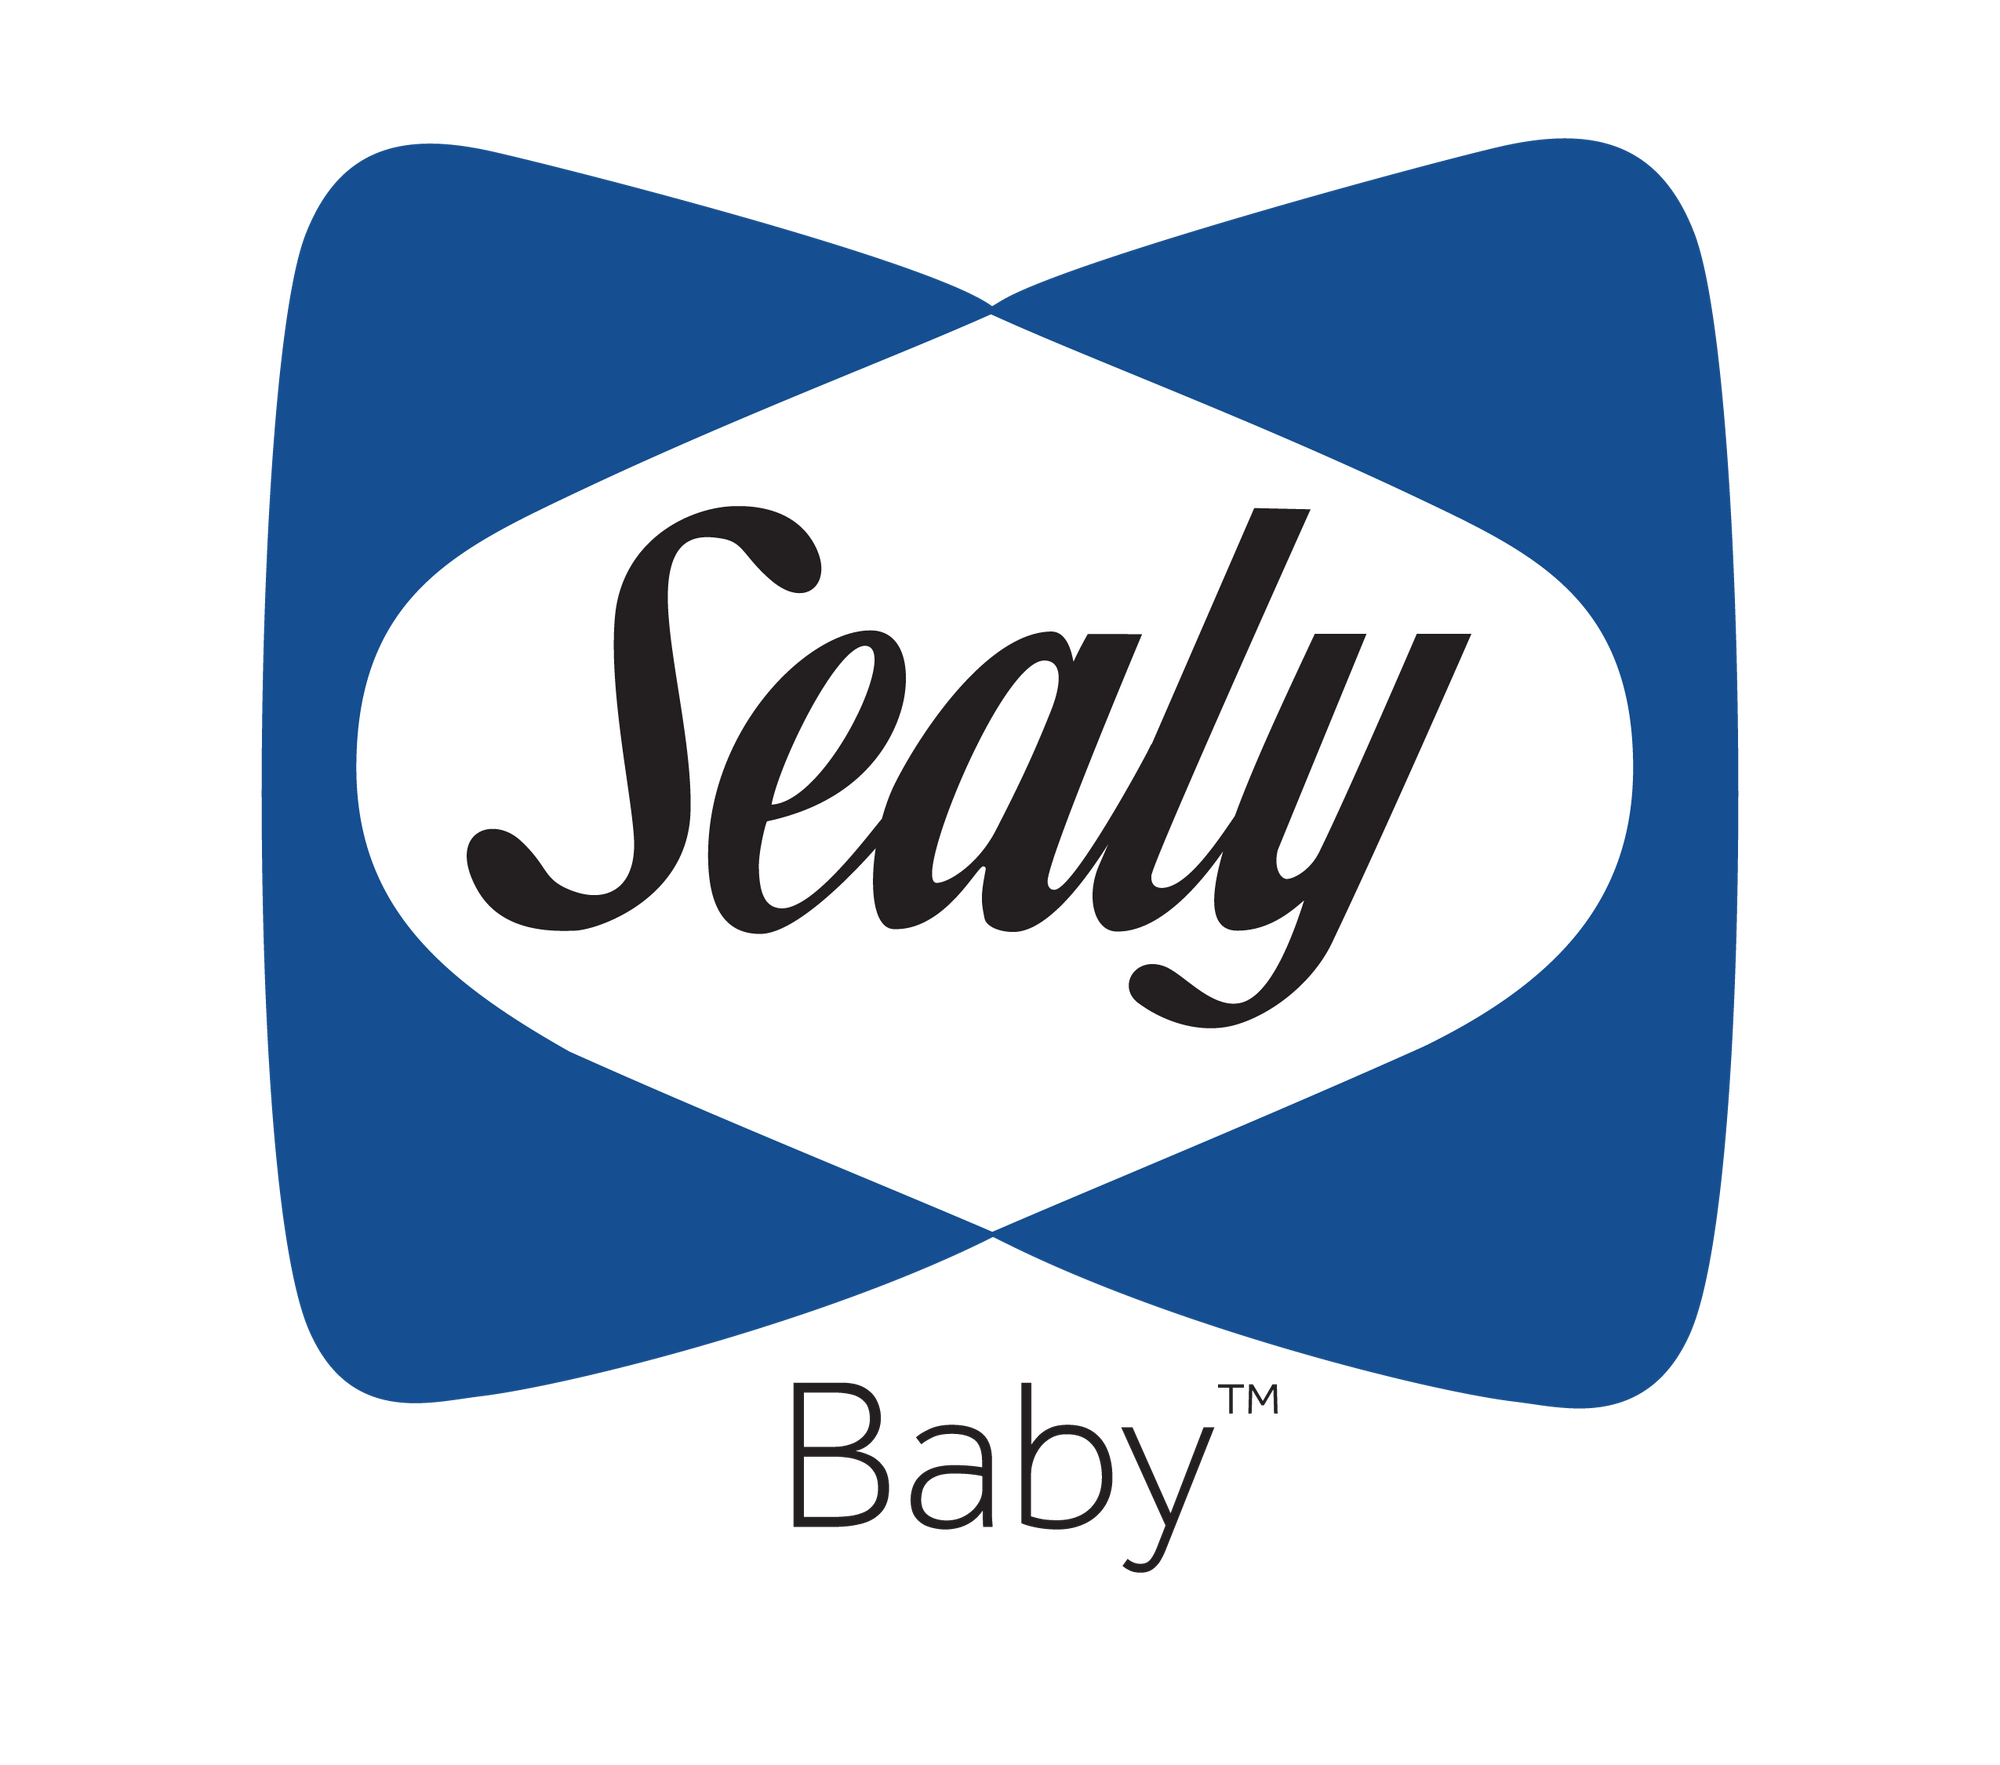 Sealy baby Logo